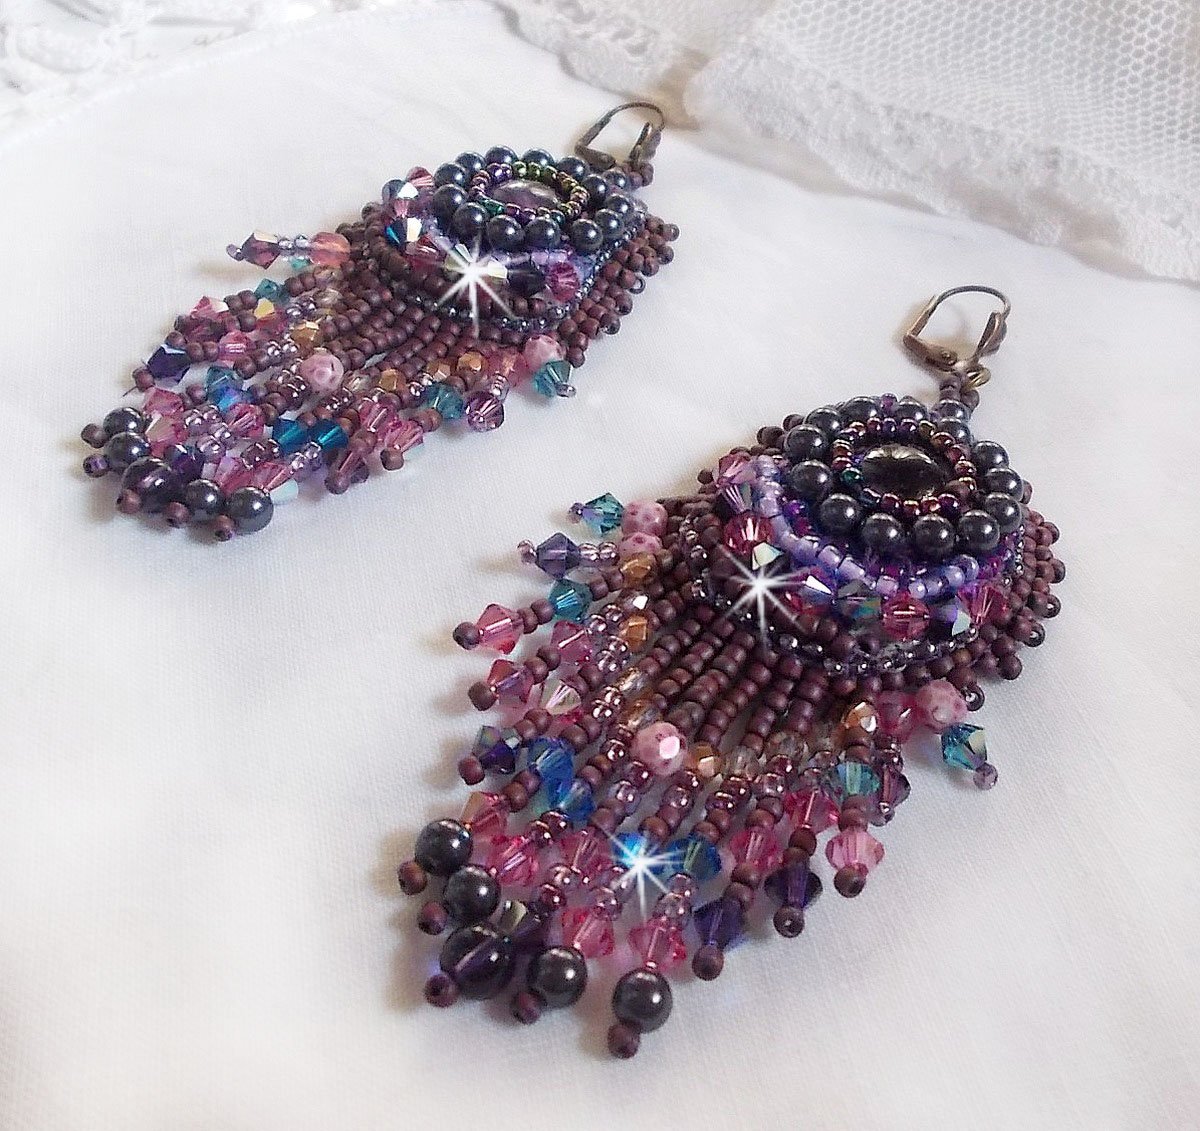 BO Esméralda brodées avec des perles de gemmes, cristal de Swarovski et perles très fines